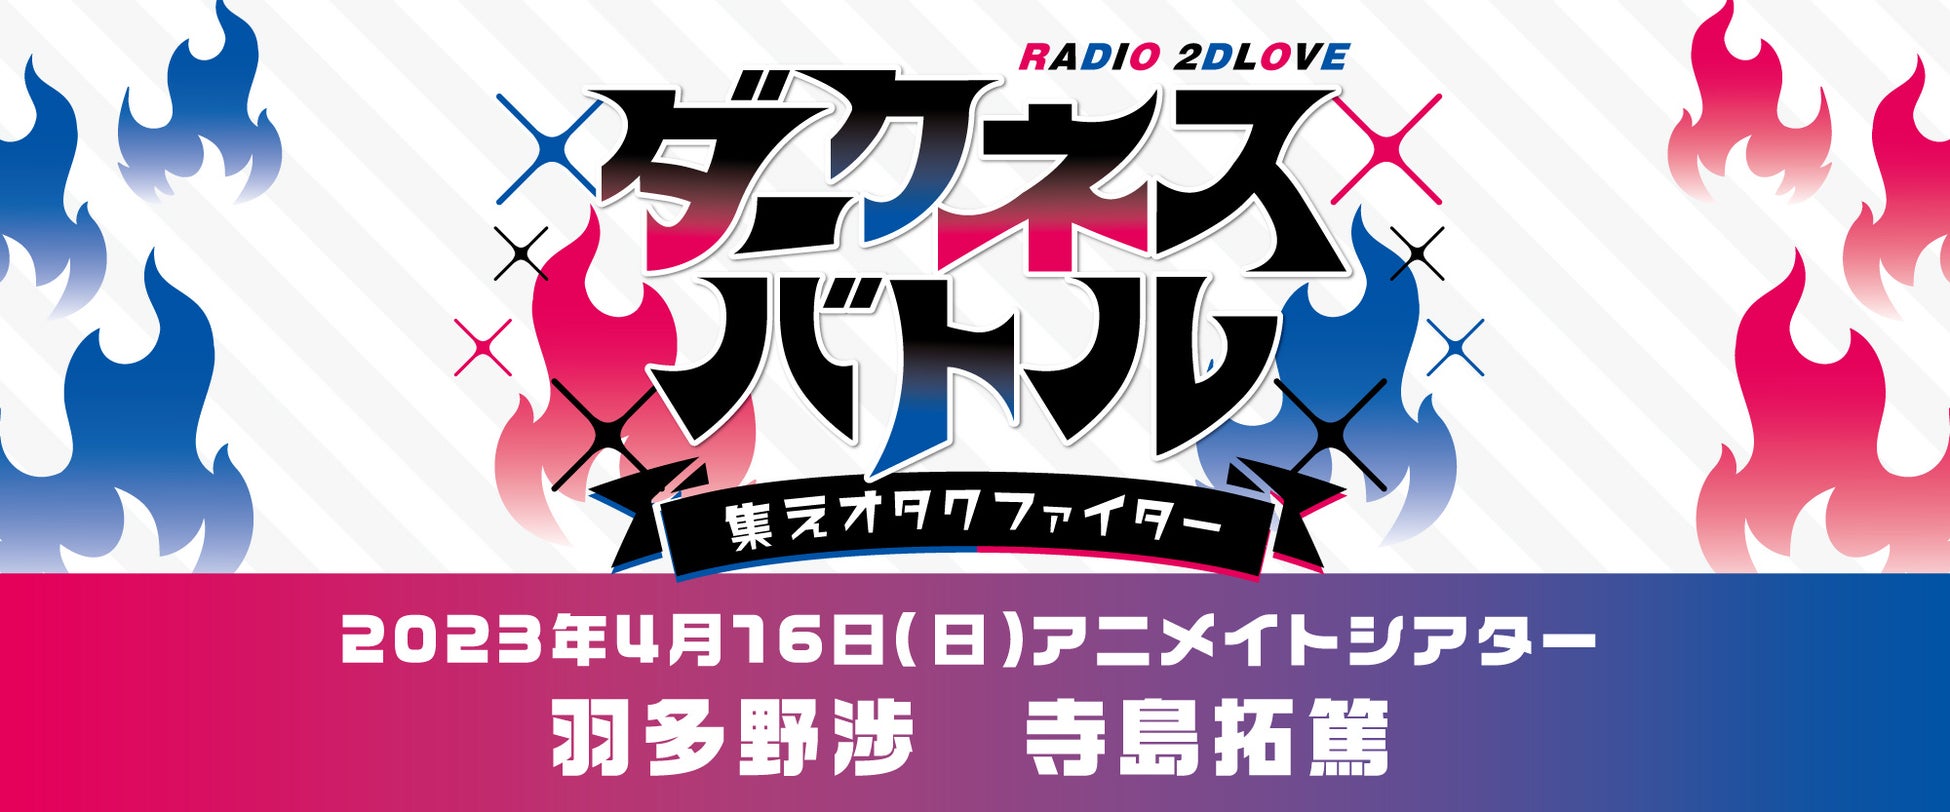 羽多野渉さん、寺島拓篤さんによる番組『2D LOVE』が2023年4月16日(日)にイベントを開催！現在チケット販売中＆メール募集中!!のサブ画像2_RADIO 2D LOVE ダークネスバトル ～集えオタクファイター～